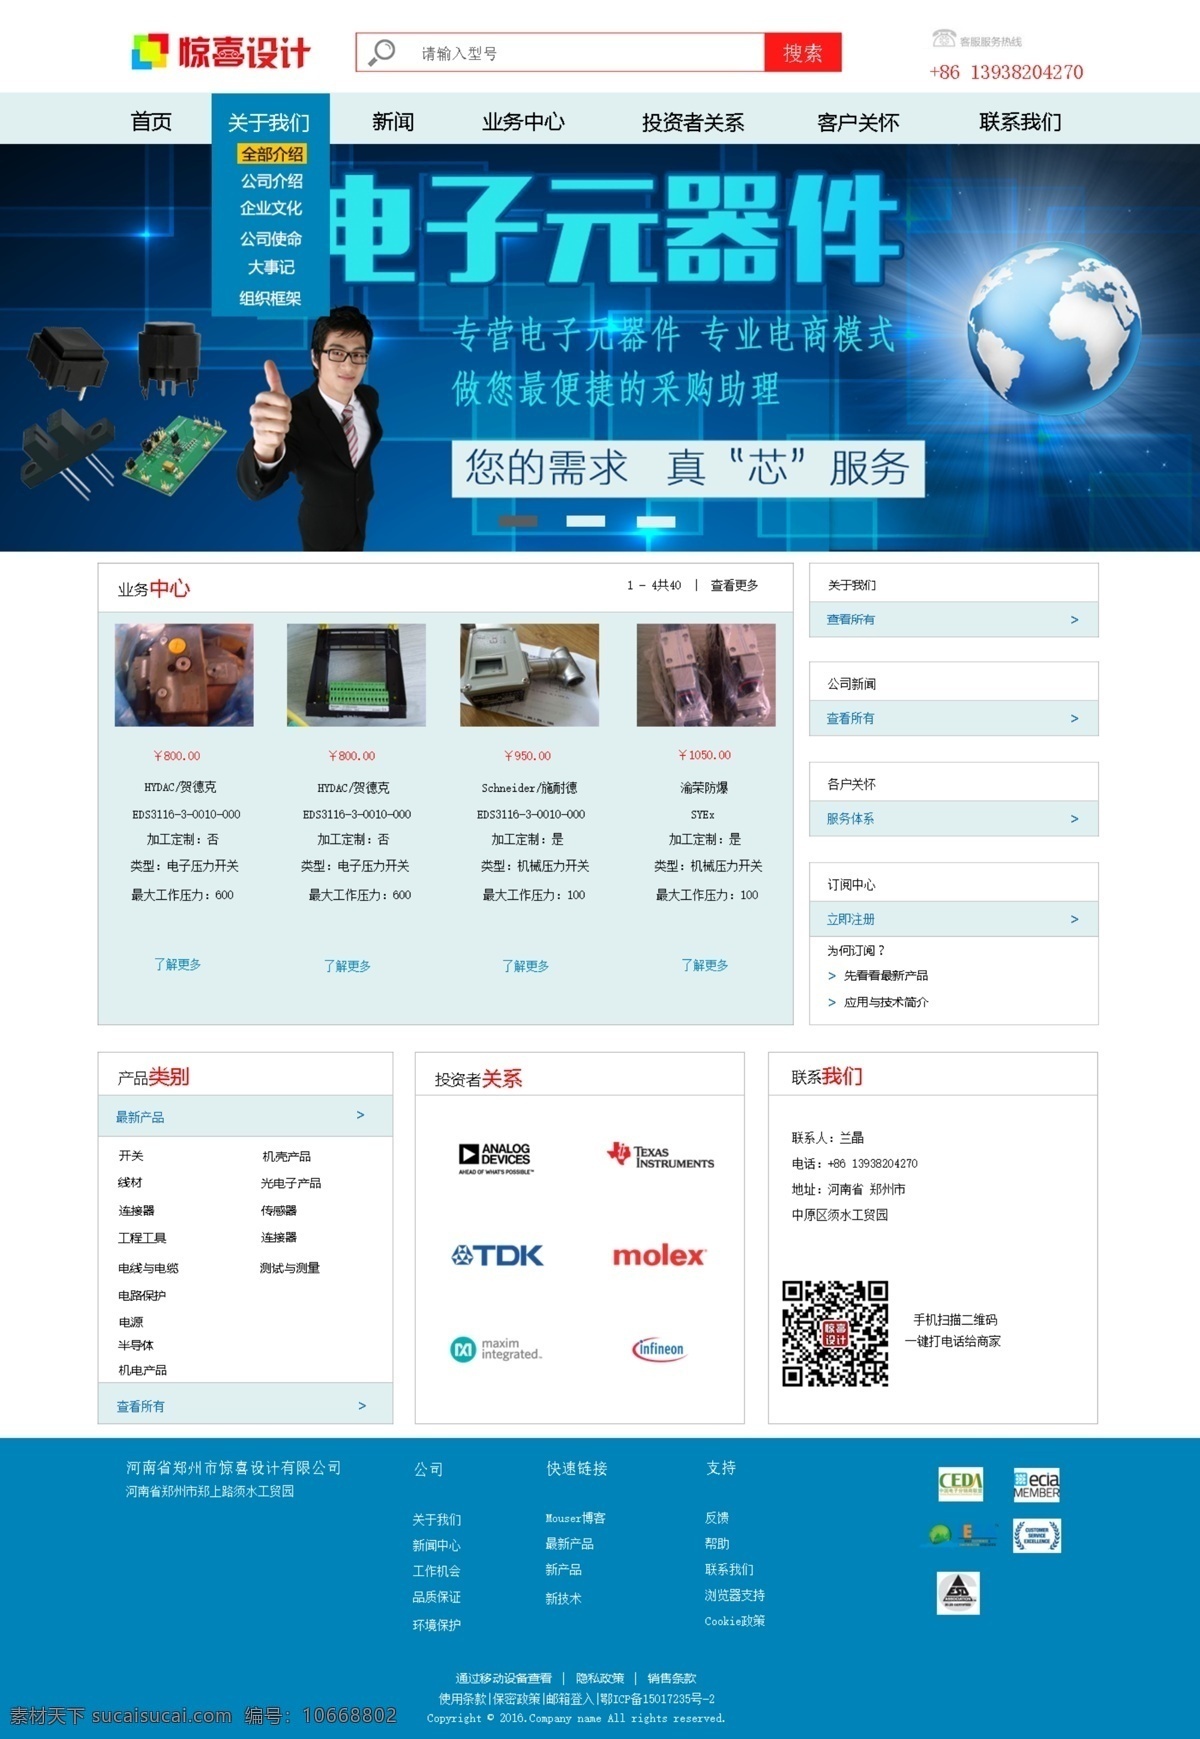 电子元件 首页 模版 网站 蓝色 企业网站 大方网站模板 电子元件企业 电子元件研发